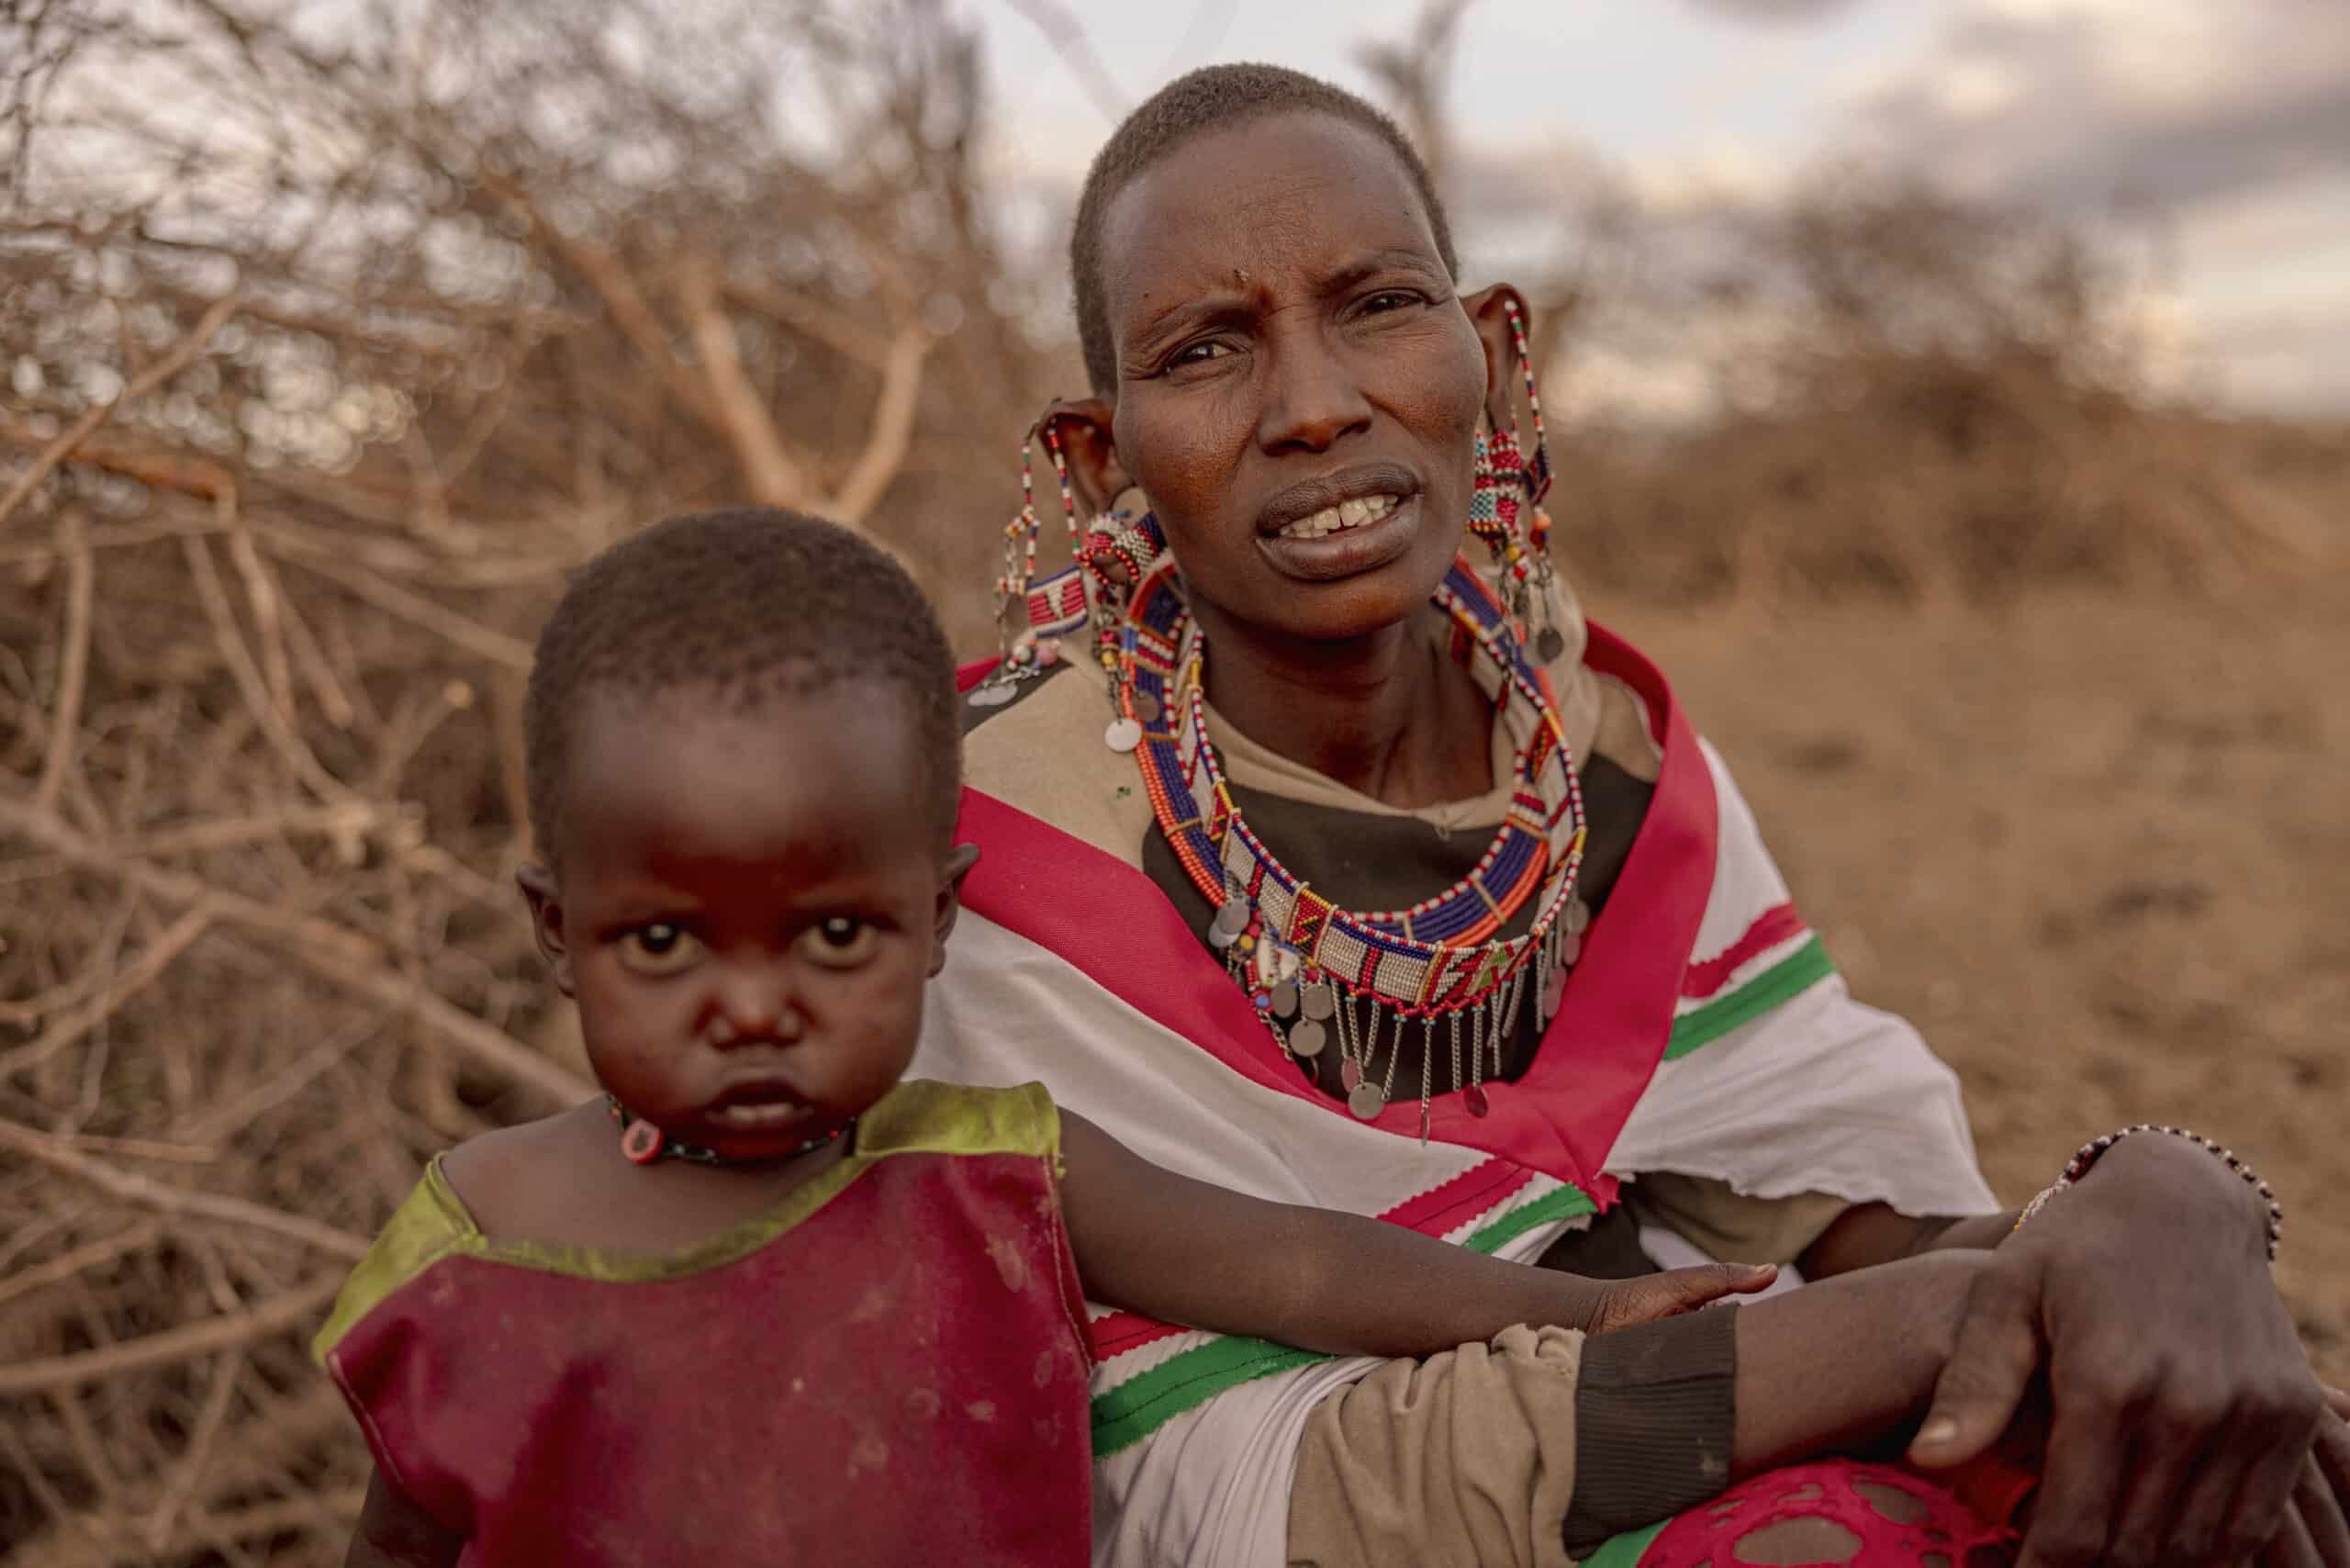 Eine Frau in traditioneller Massai-Kleidung und farbenfroher Perlenstickerei und ein kleines Kind in einem roten Gewand sitzen in der Abenddämmerung im Freien in einer trockenen Landschaft. Die Frau blickt in die Kamera, während das Kind ernst wirkt. © Fotografie Tomas Rodriguez